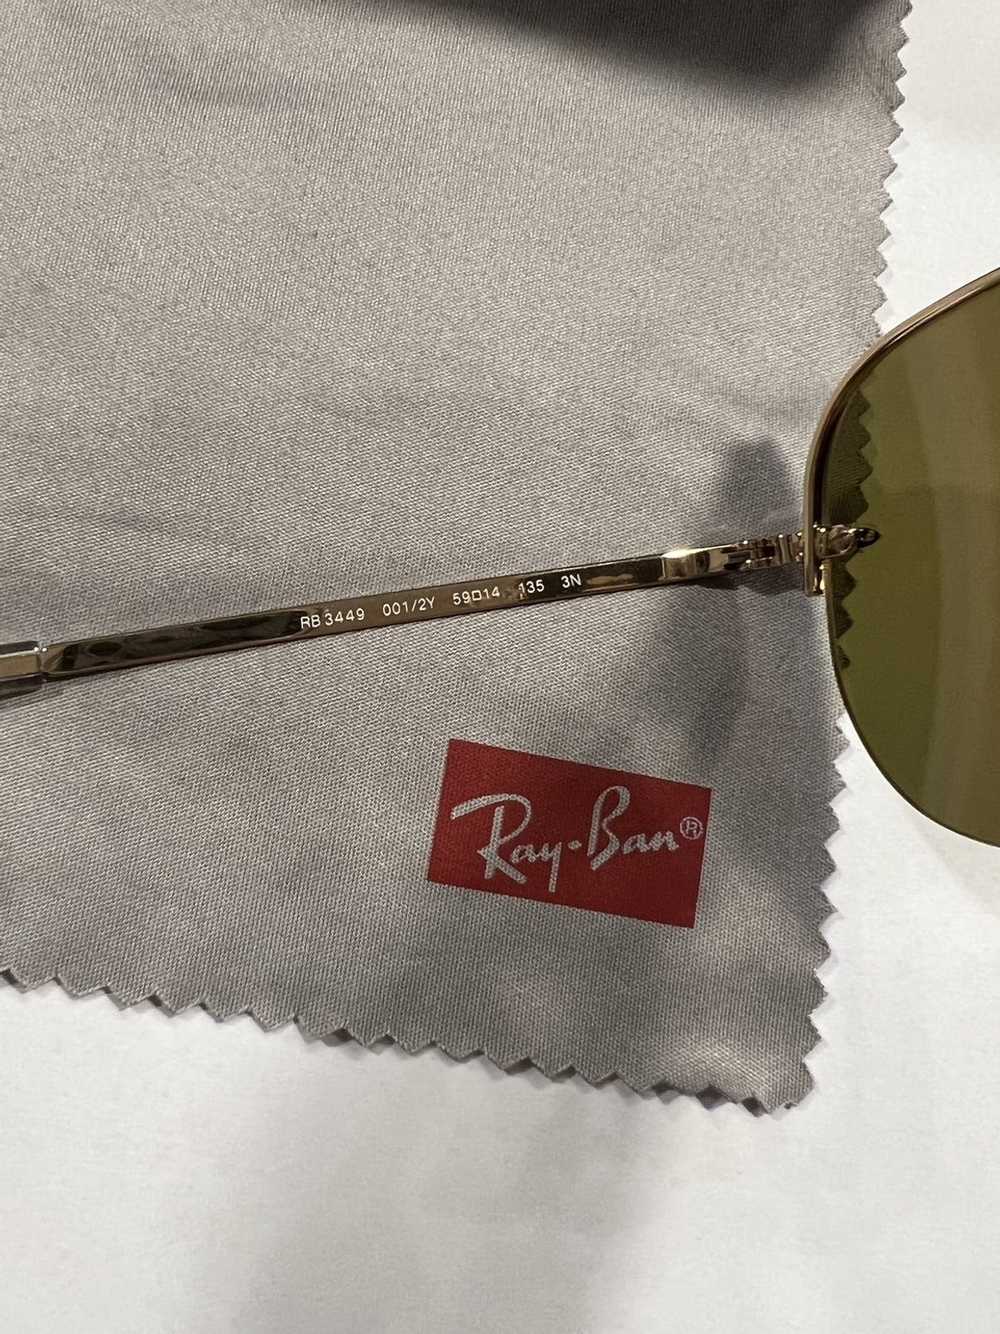 RayBan RB3449 Ray-Ban Aviator Sunglasses - image 5